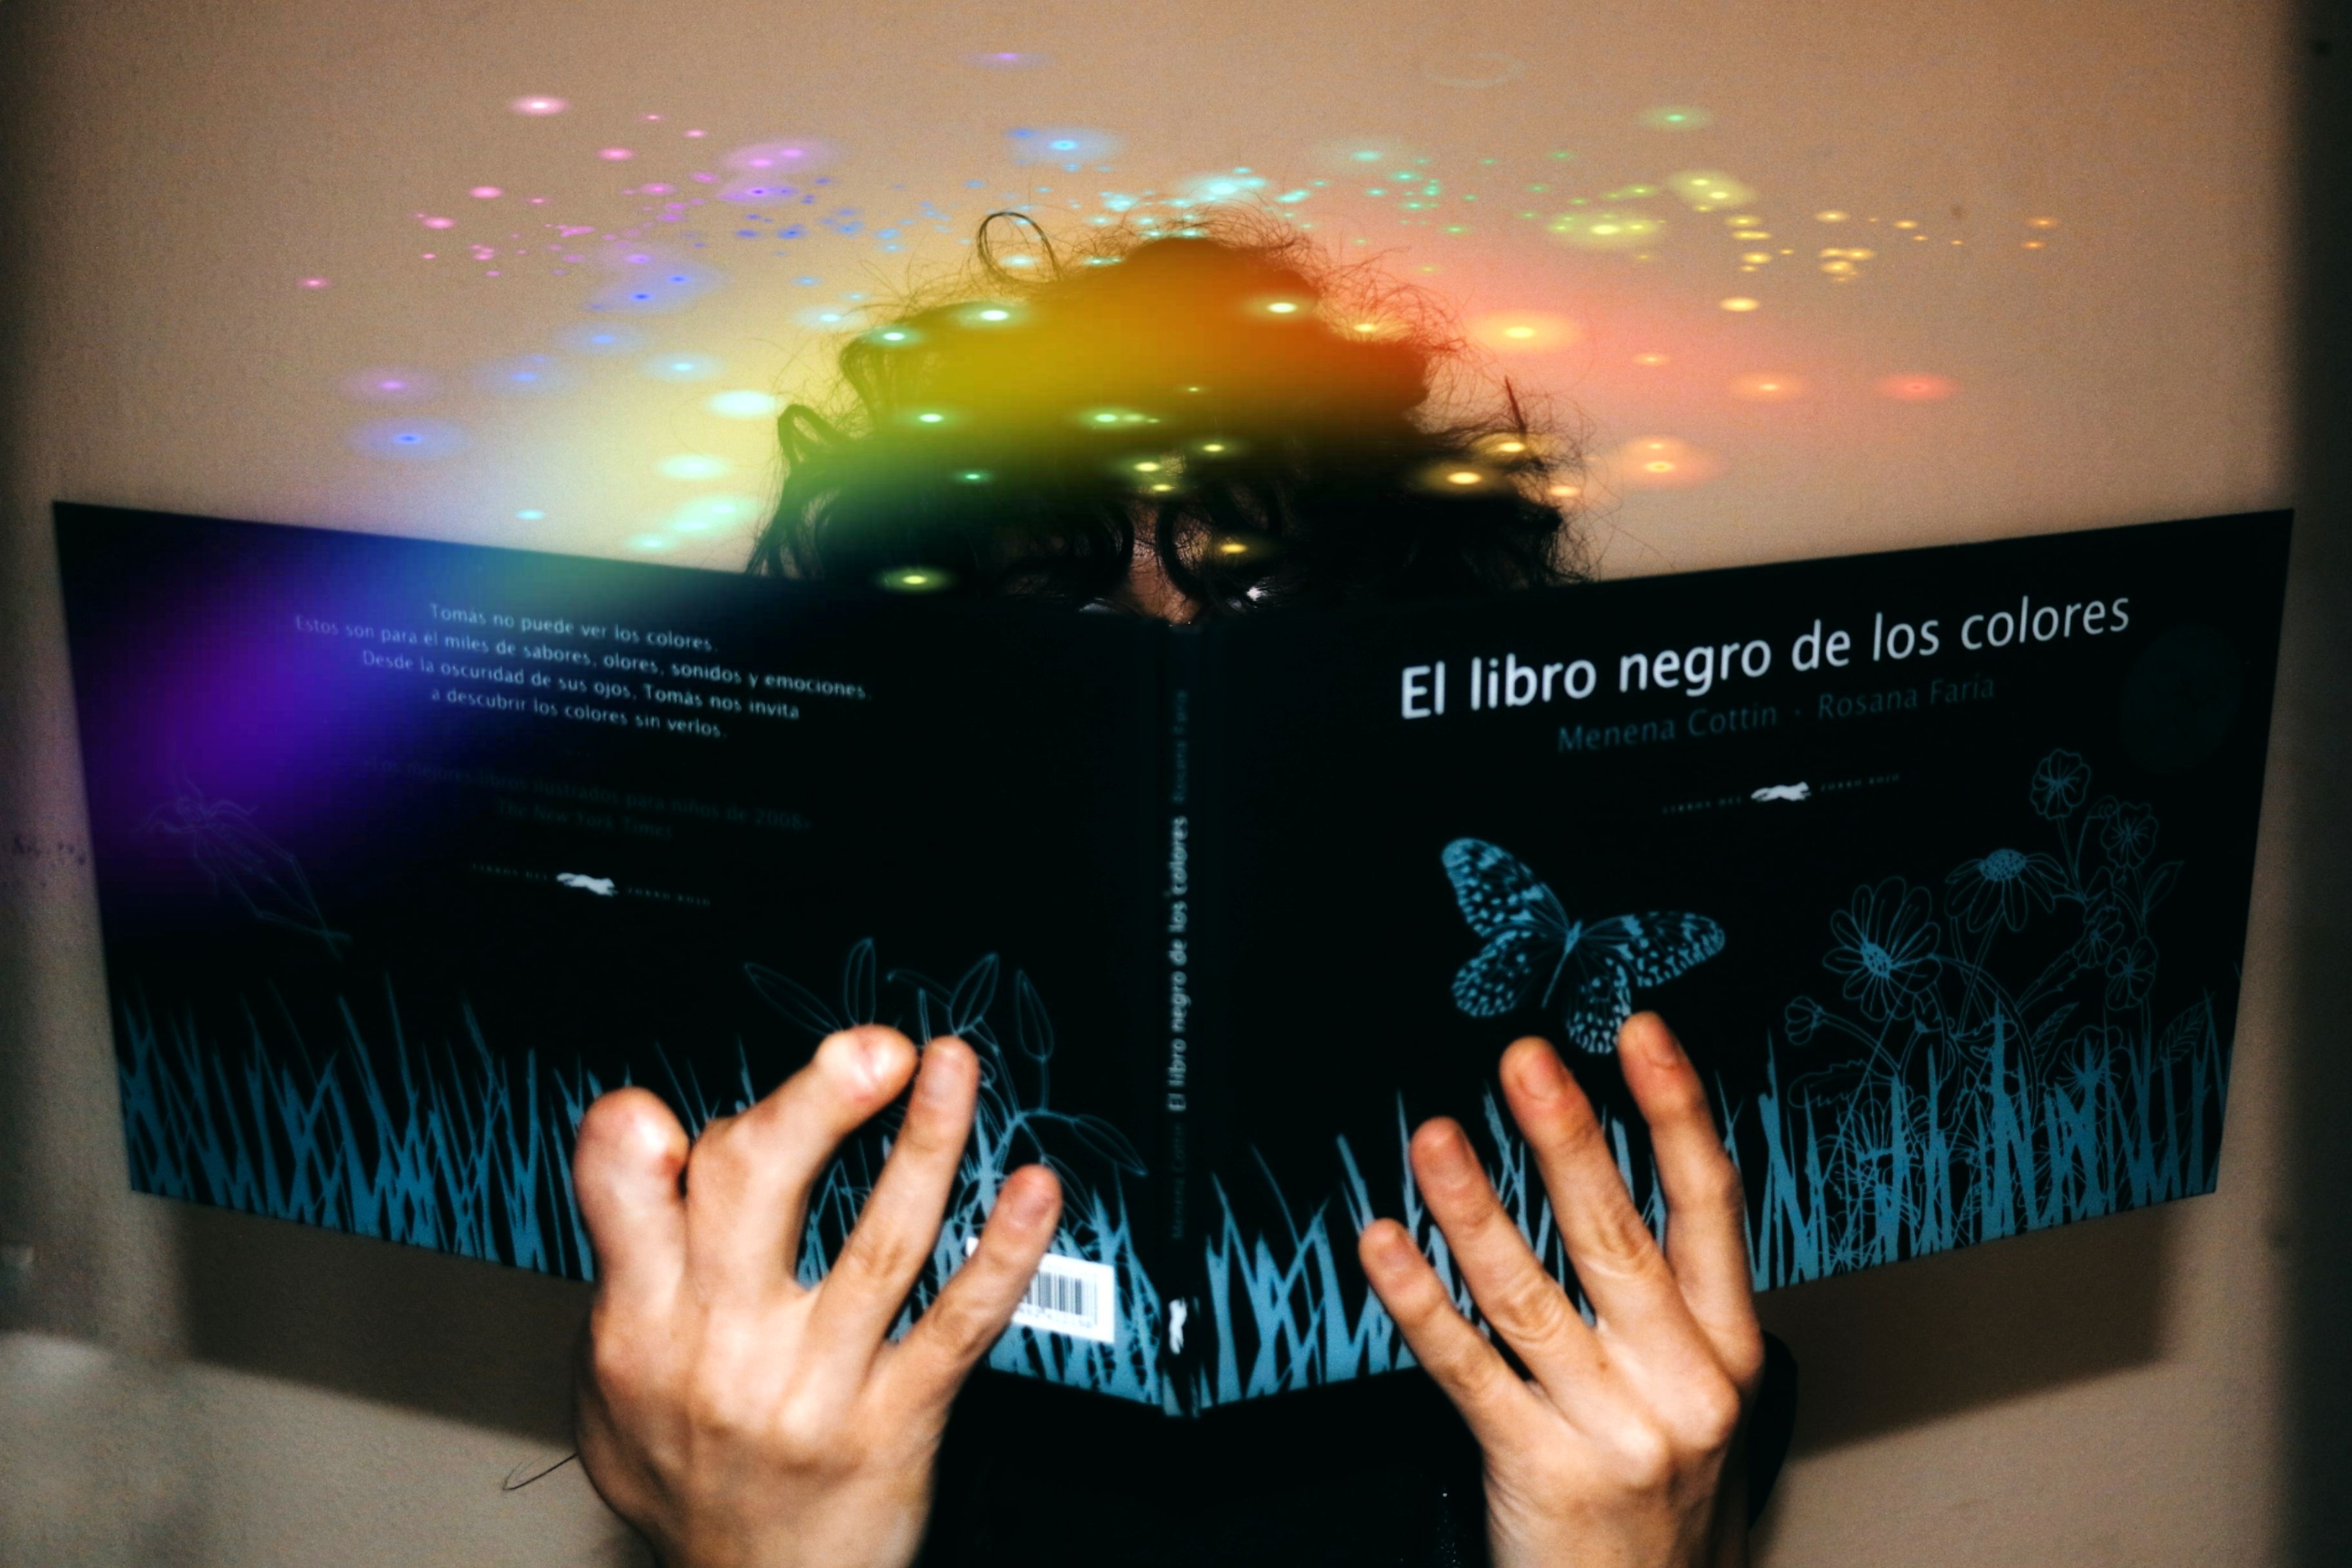 LITERATURA ESPECIAL PARA TODOS/AS. Por Raquel Fernández Hernández